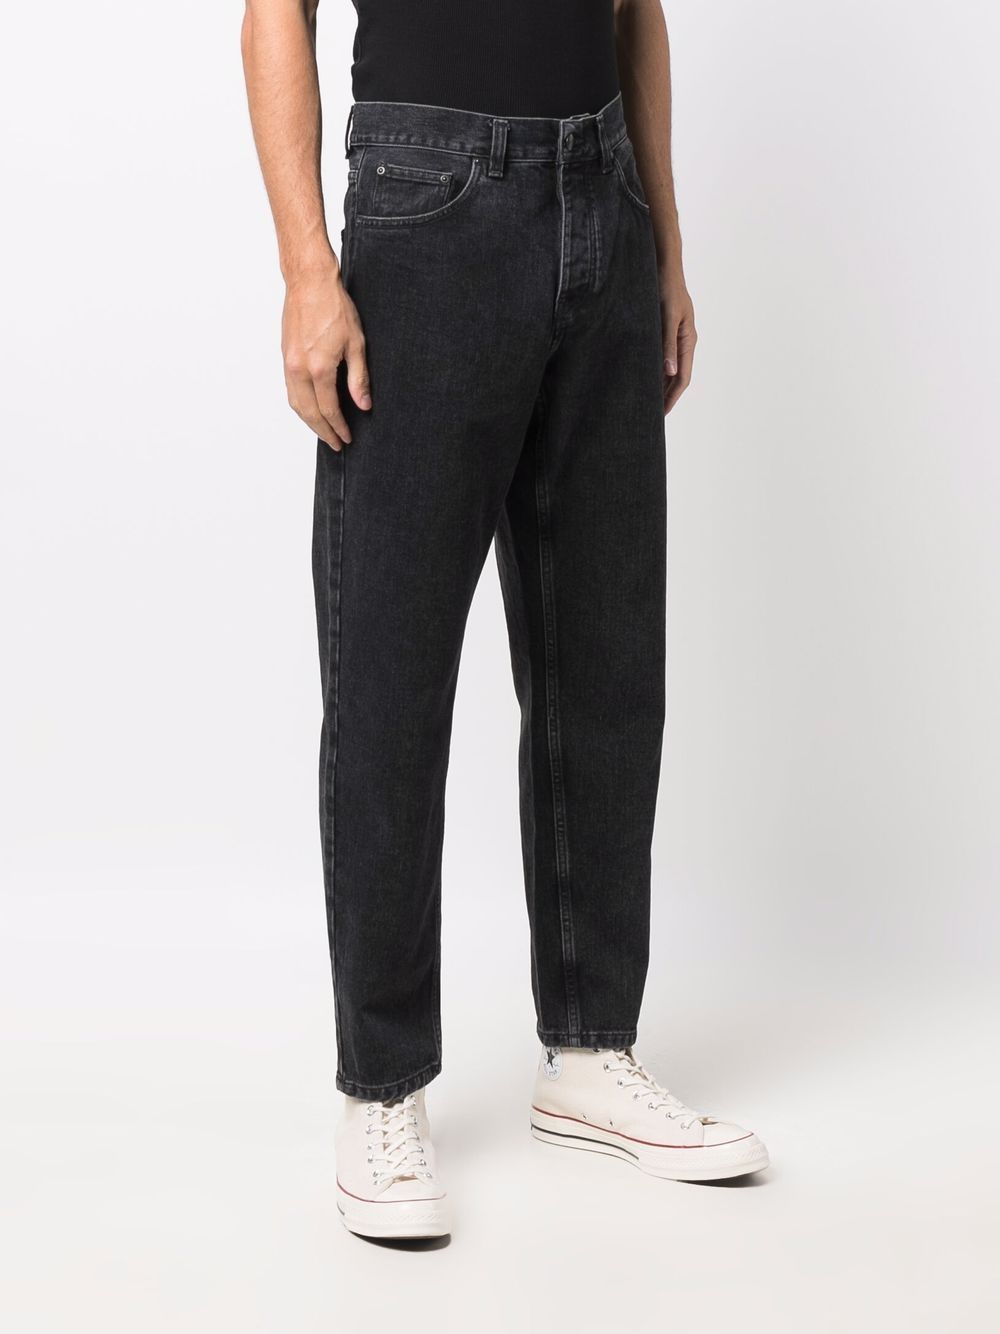 фото Carhartt wip прямые джинсы с заниженной талией